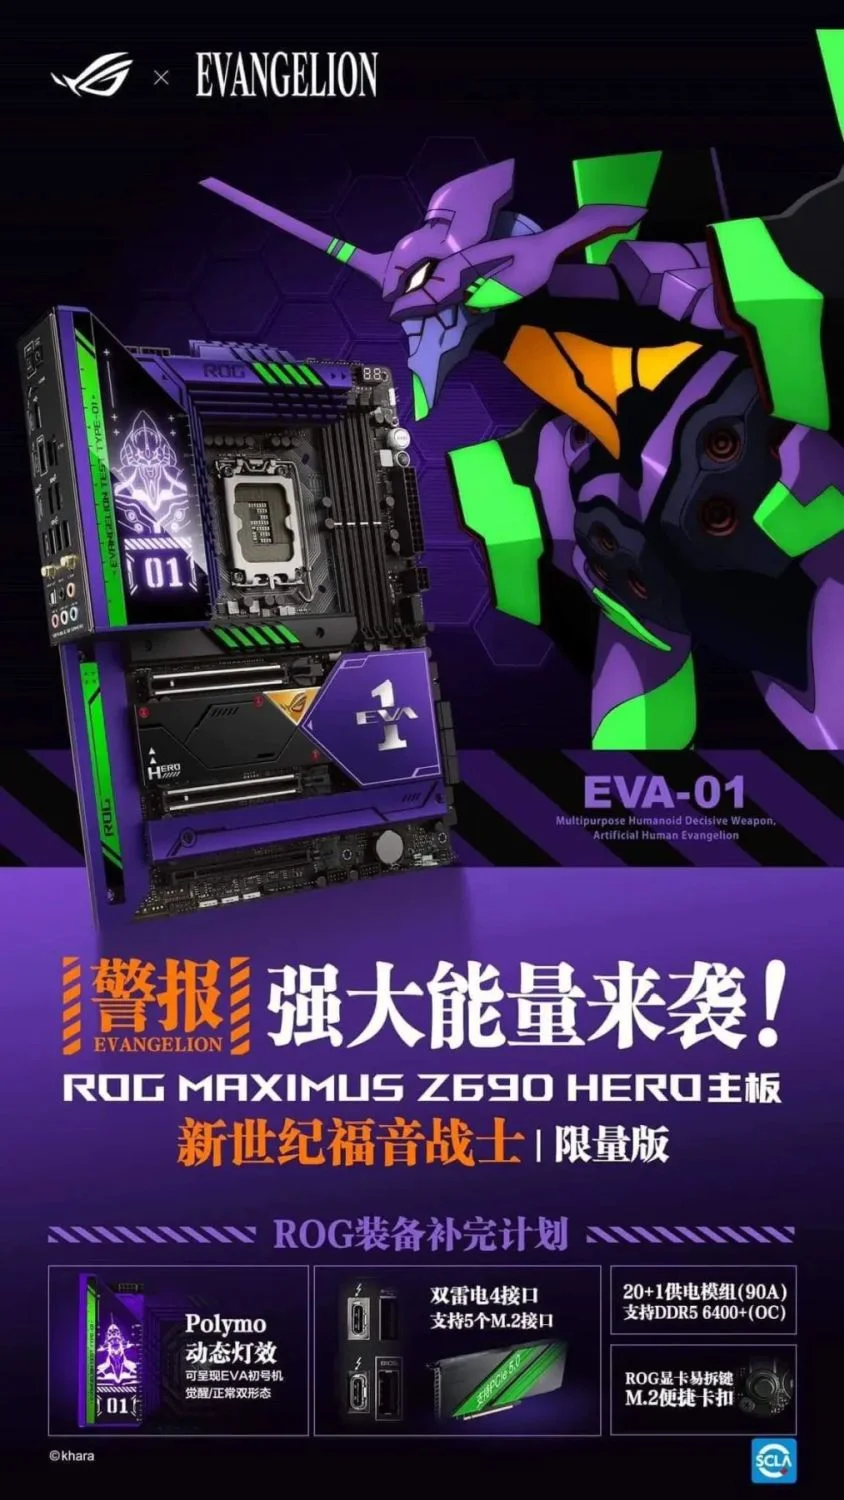 ASUS ROG Z690 Hero Eva Edition